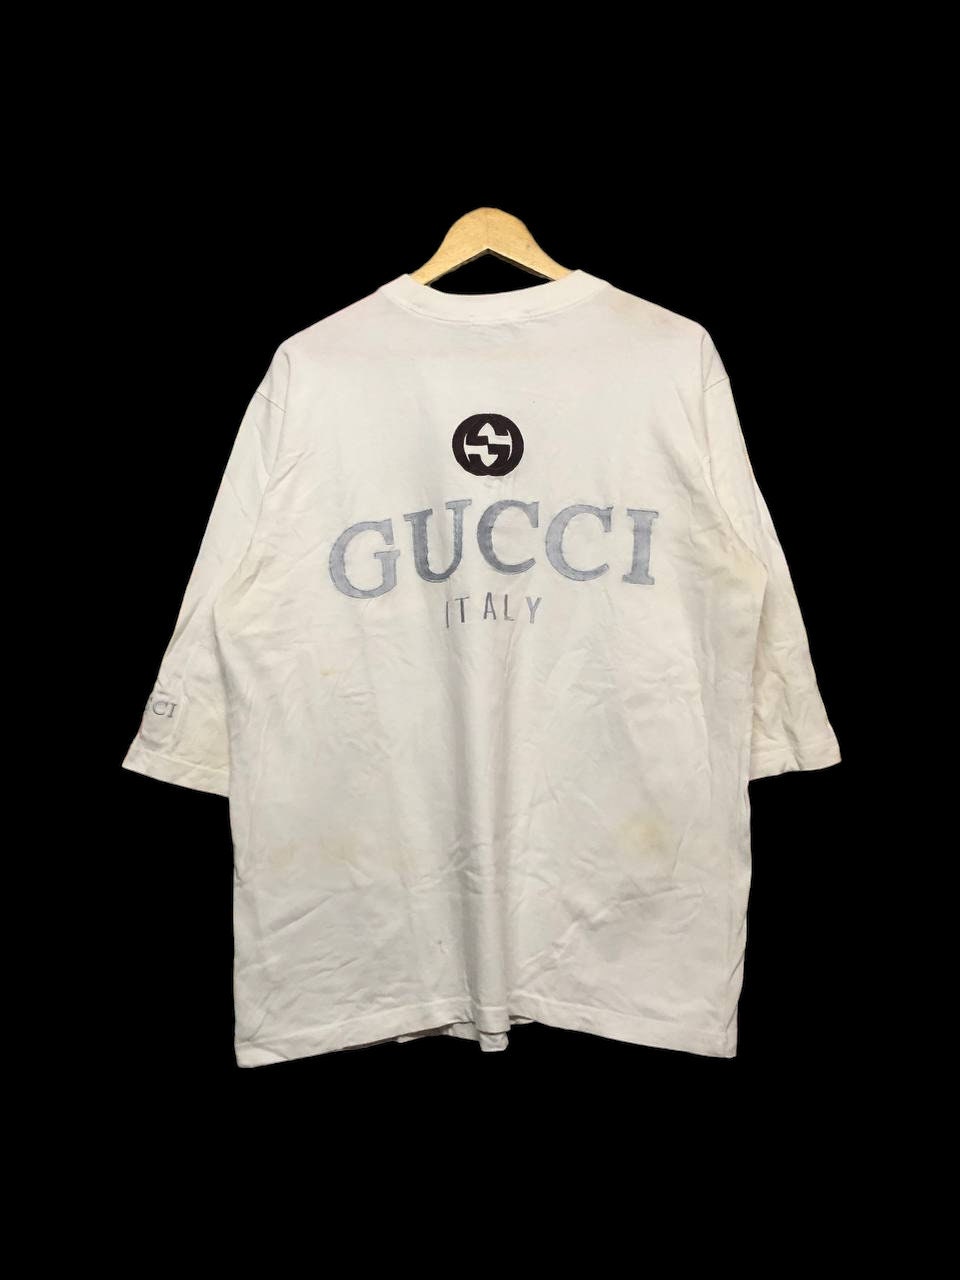 Vintage Gucci Tshirt Womens, Cheap Gucci Tshirt Mens - Allsoymade